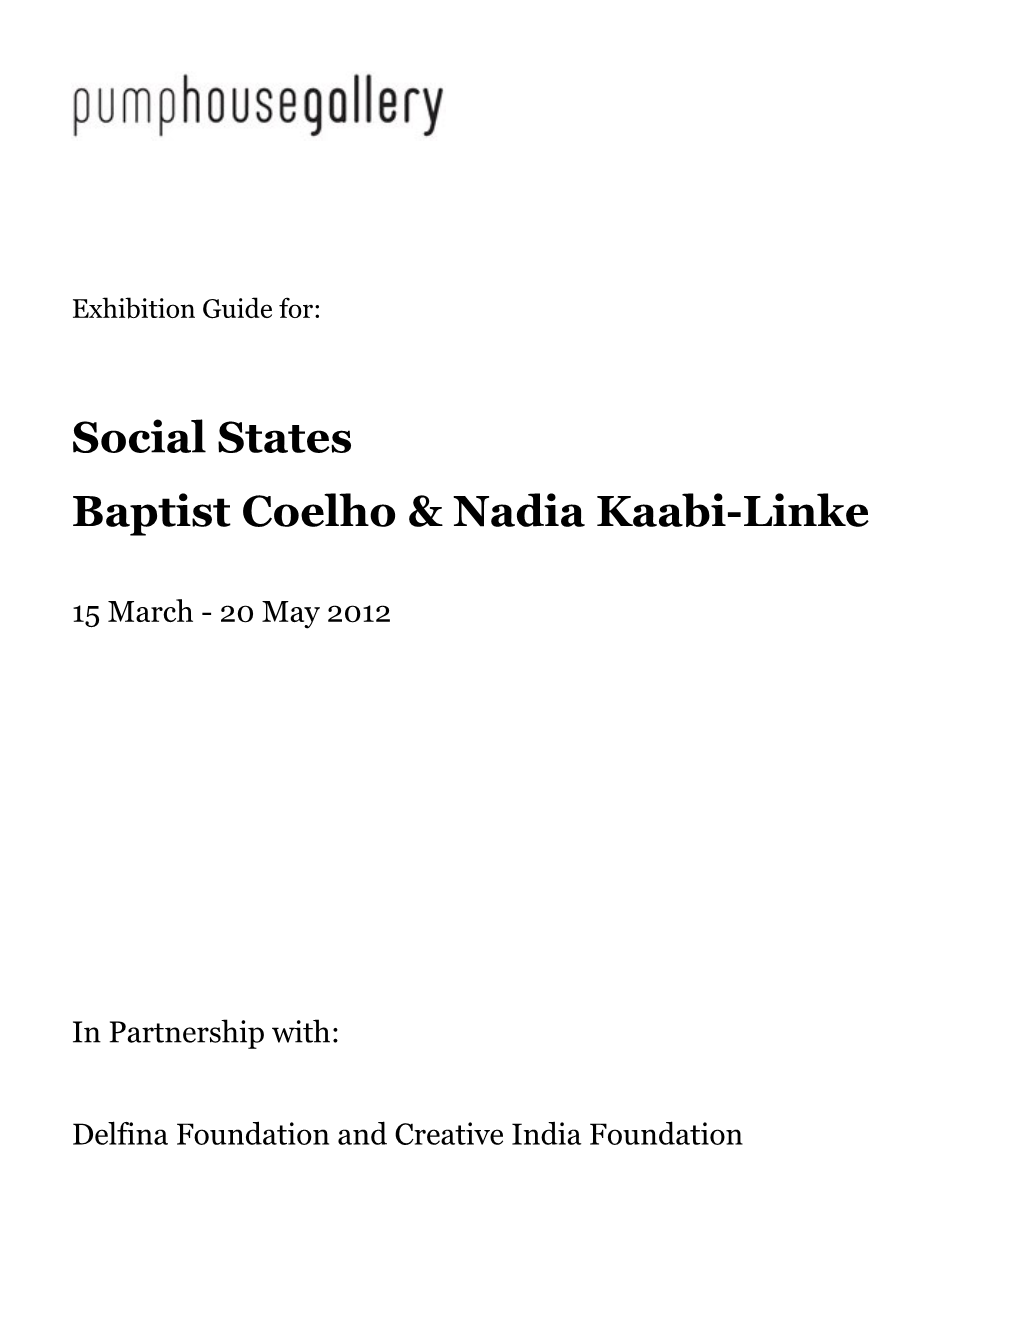 Baptist Coelho & Nadia Kaabi-Linke